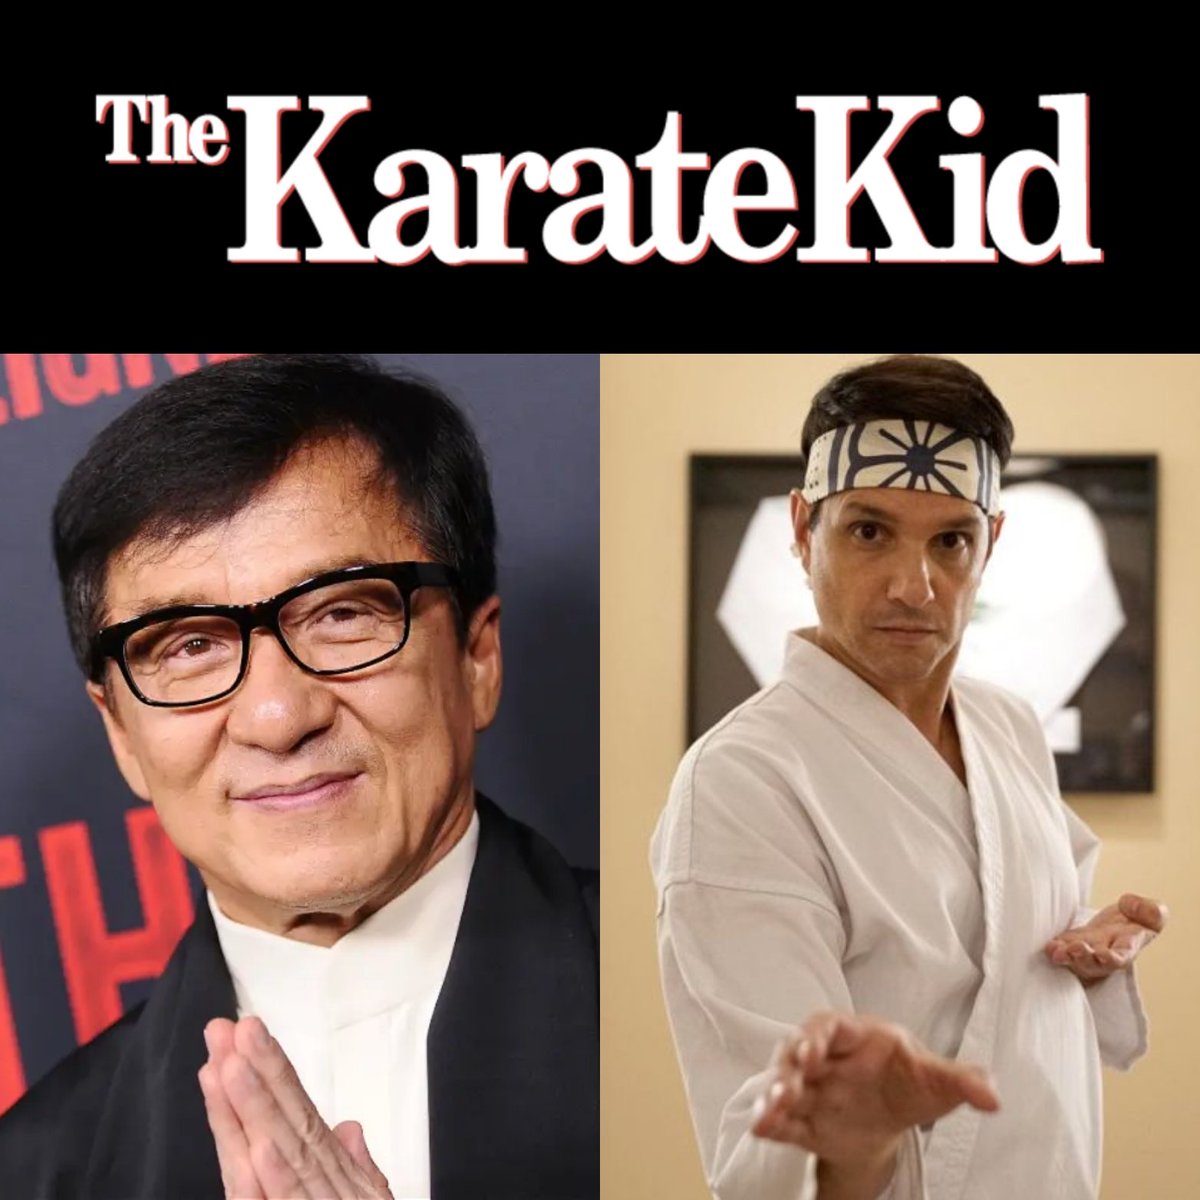 SE RETRASA LA NUEVA CINTA KARATE KID!

La nueva película de #KarateKid protagonizados por #JackieChan y #RalphMacchio se retrasa su estreno y llegará el 30 de mayo de 2025 en cines.

#KarateKidMovie #KarateKid2025